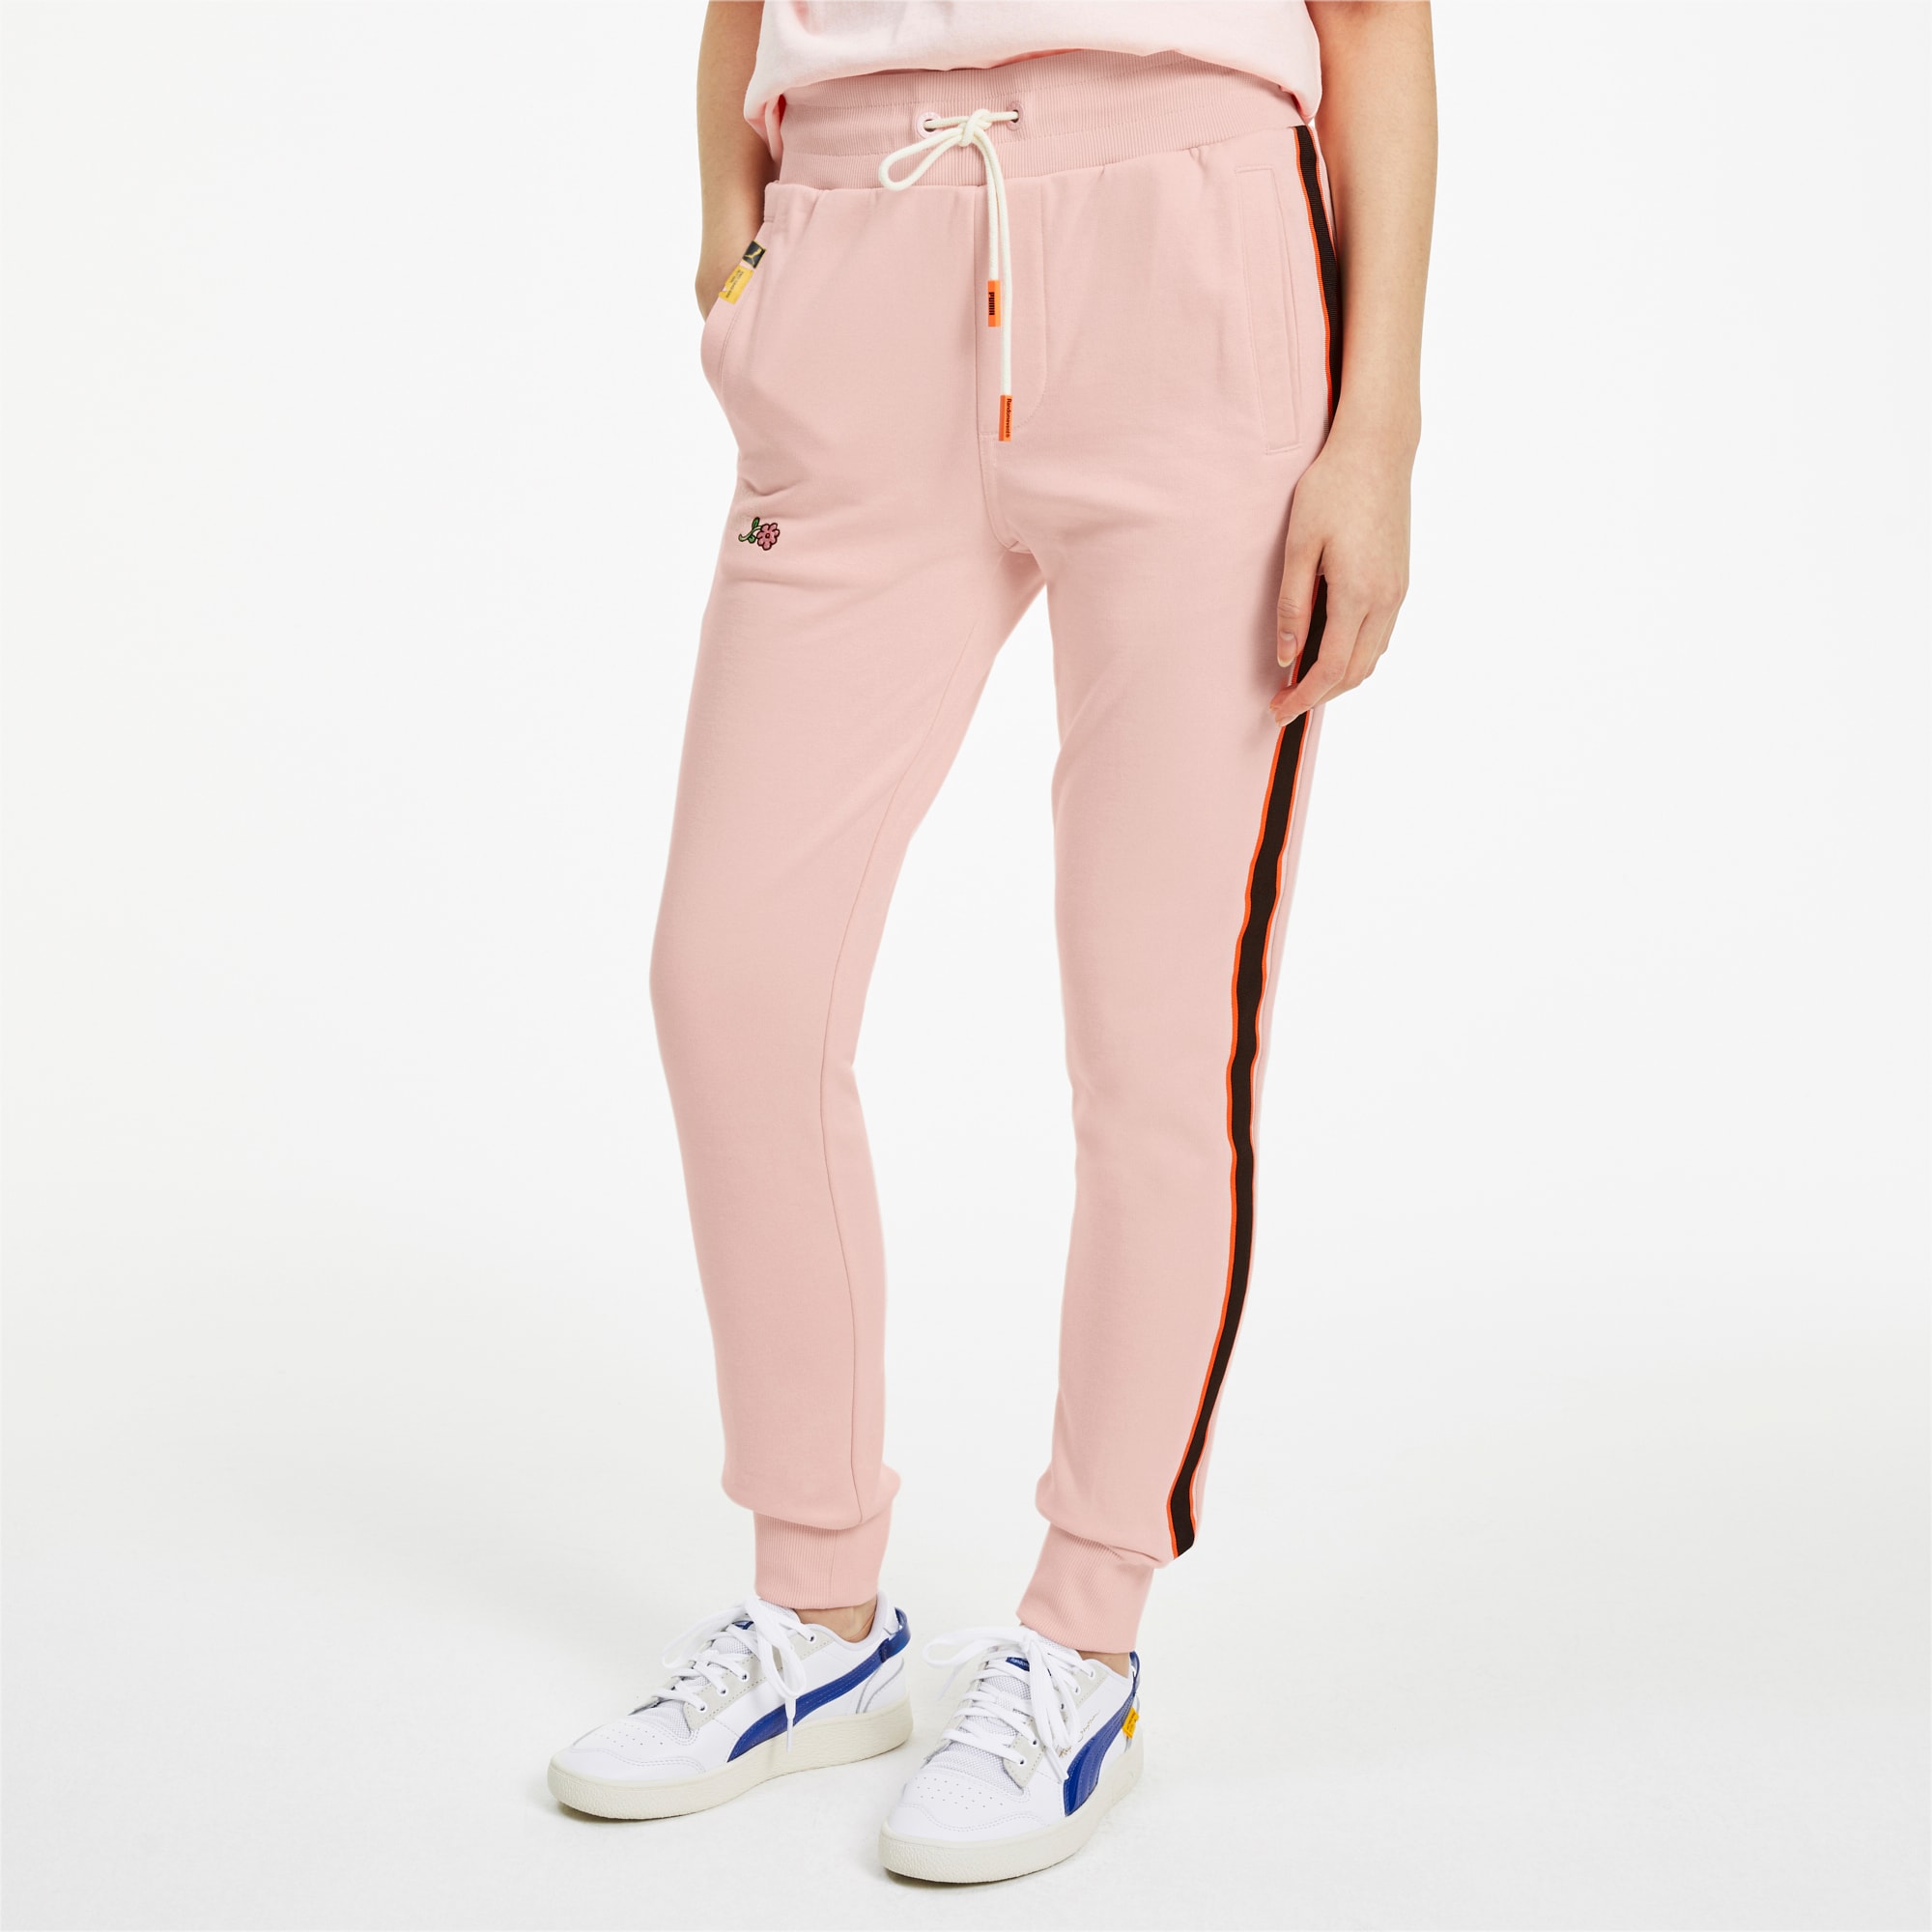 puma pink pants